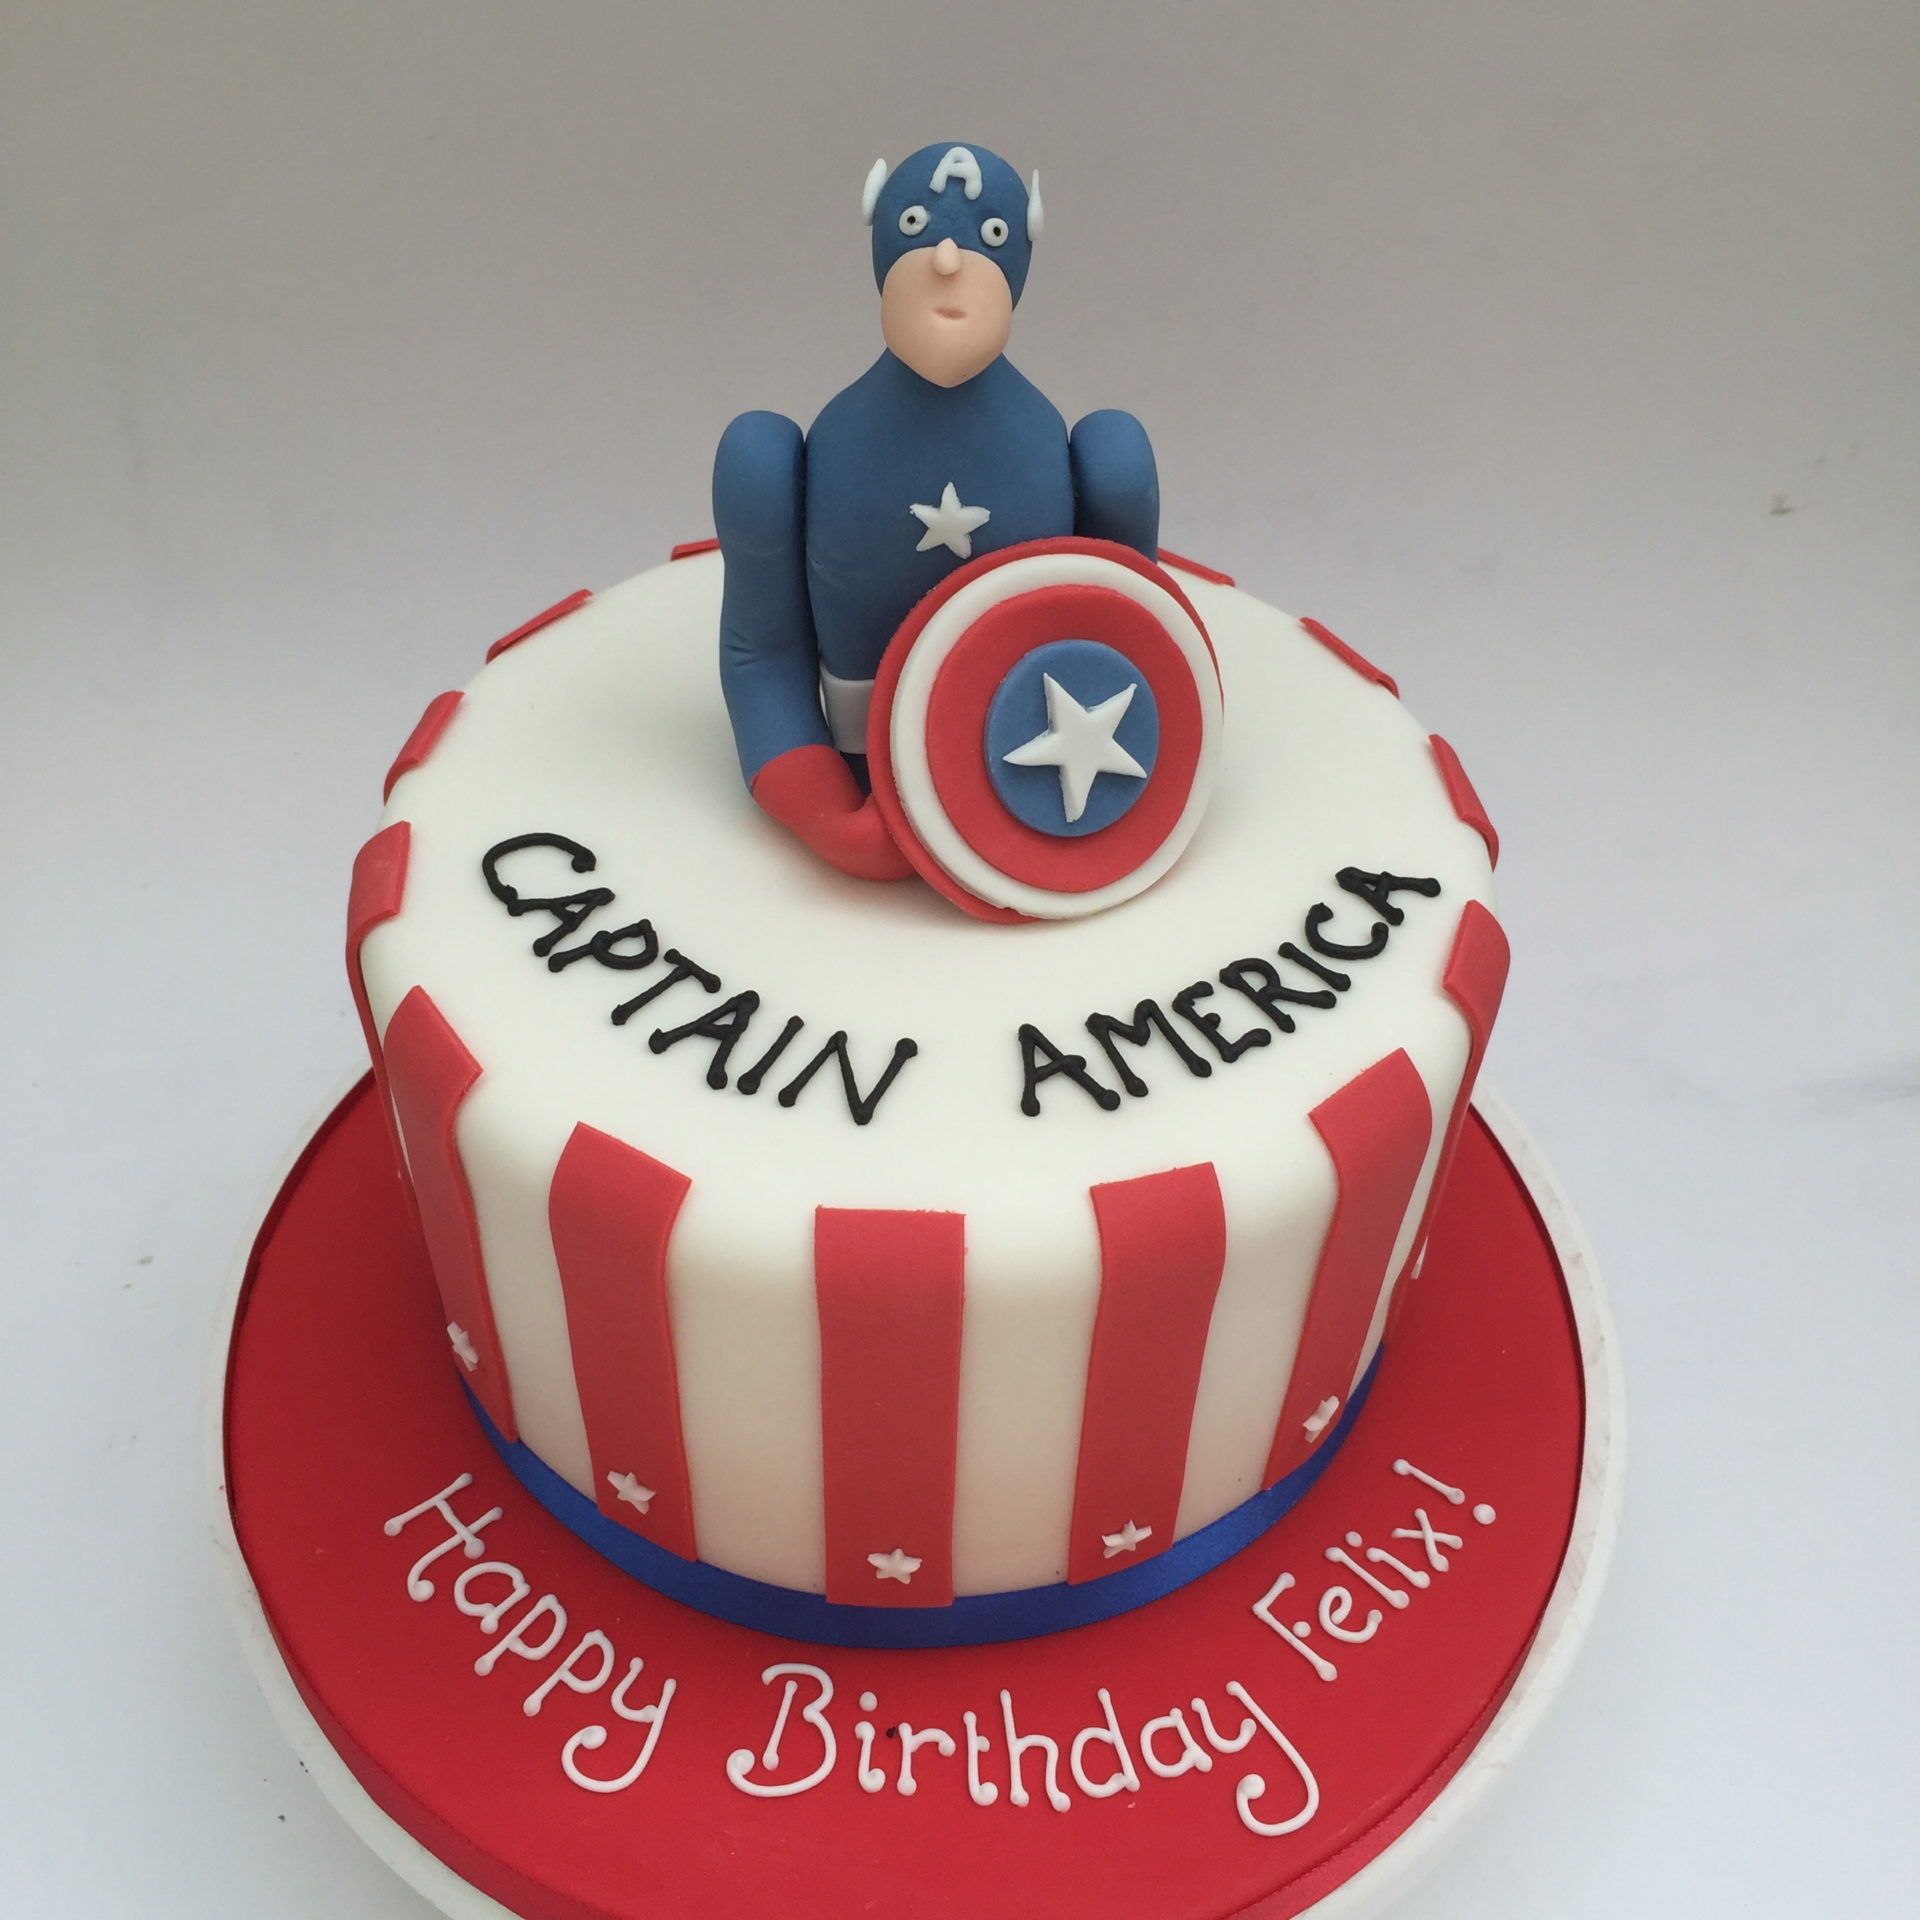 Captain America Decorated Cake